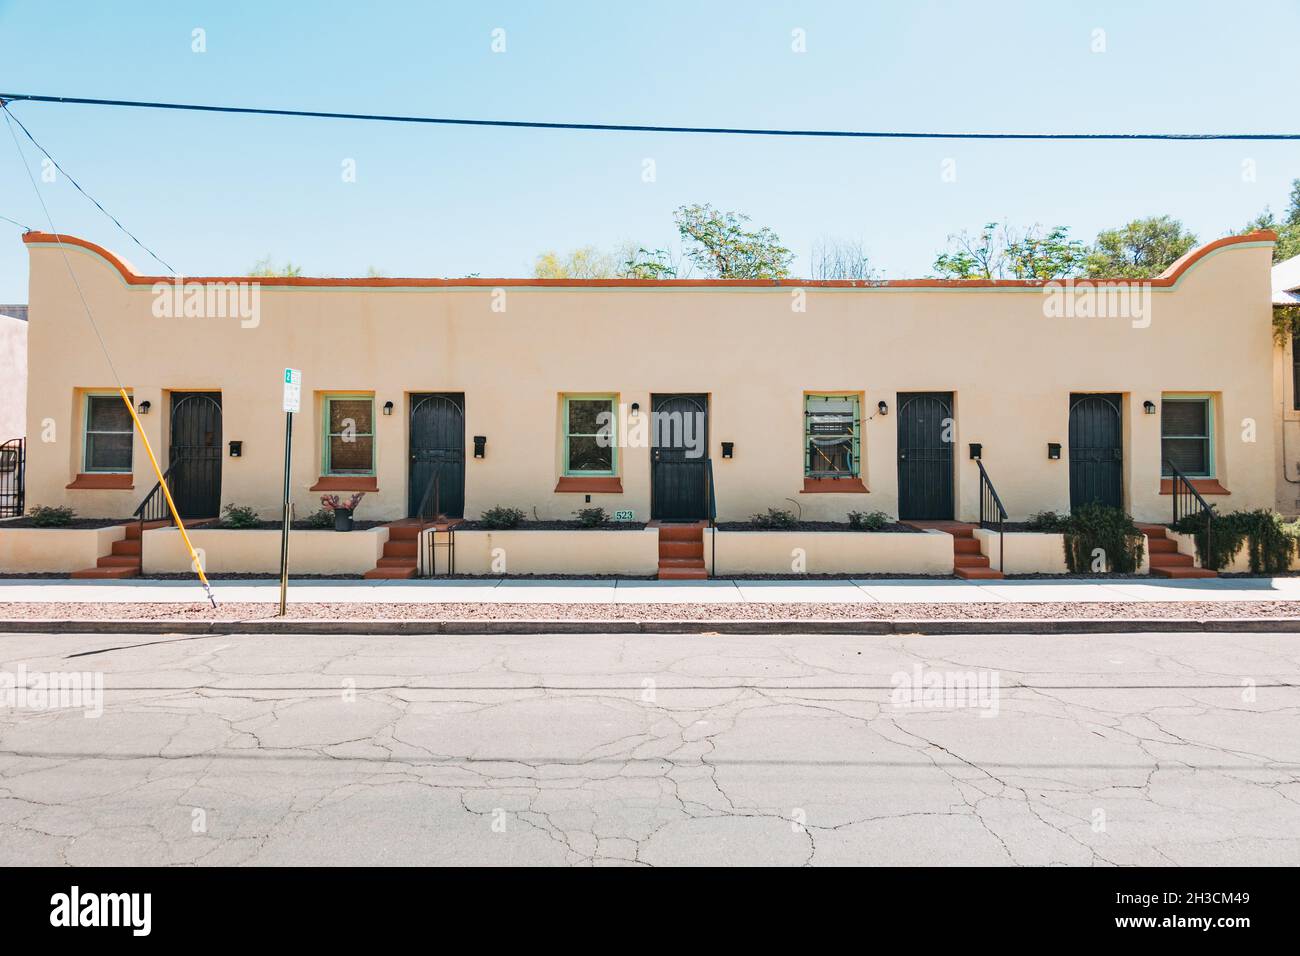 Une maison Adobe multi-unités à Barrio Viejo, Tucson, AZ Banque D'Images